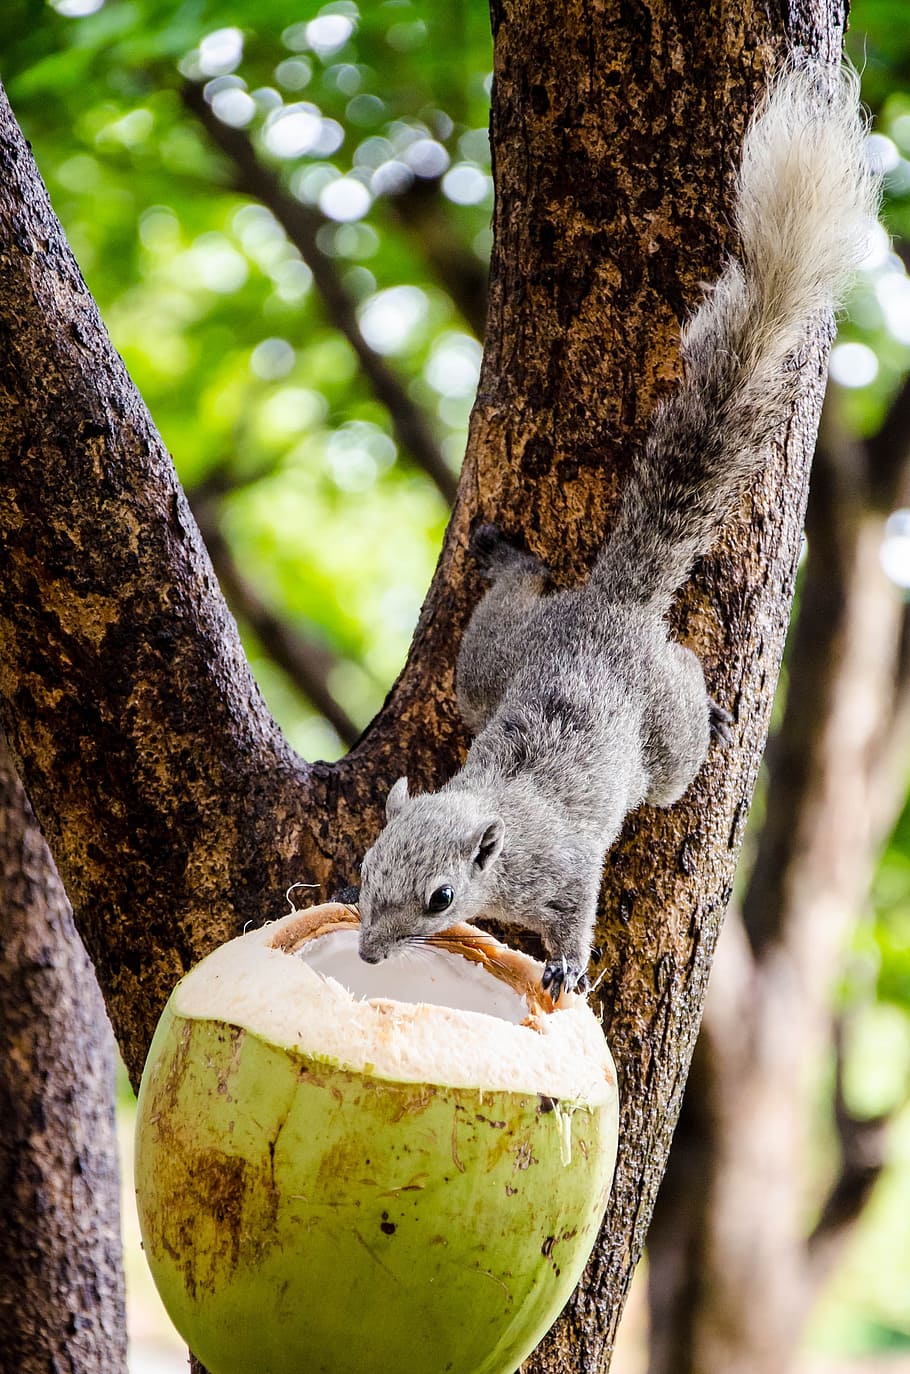 Feeding squirrel with coconut, animal, wildlife, cute, mammal, HD wallpaper